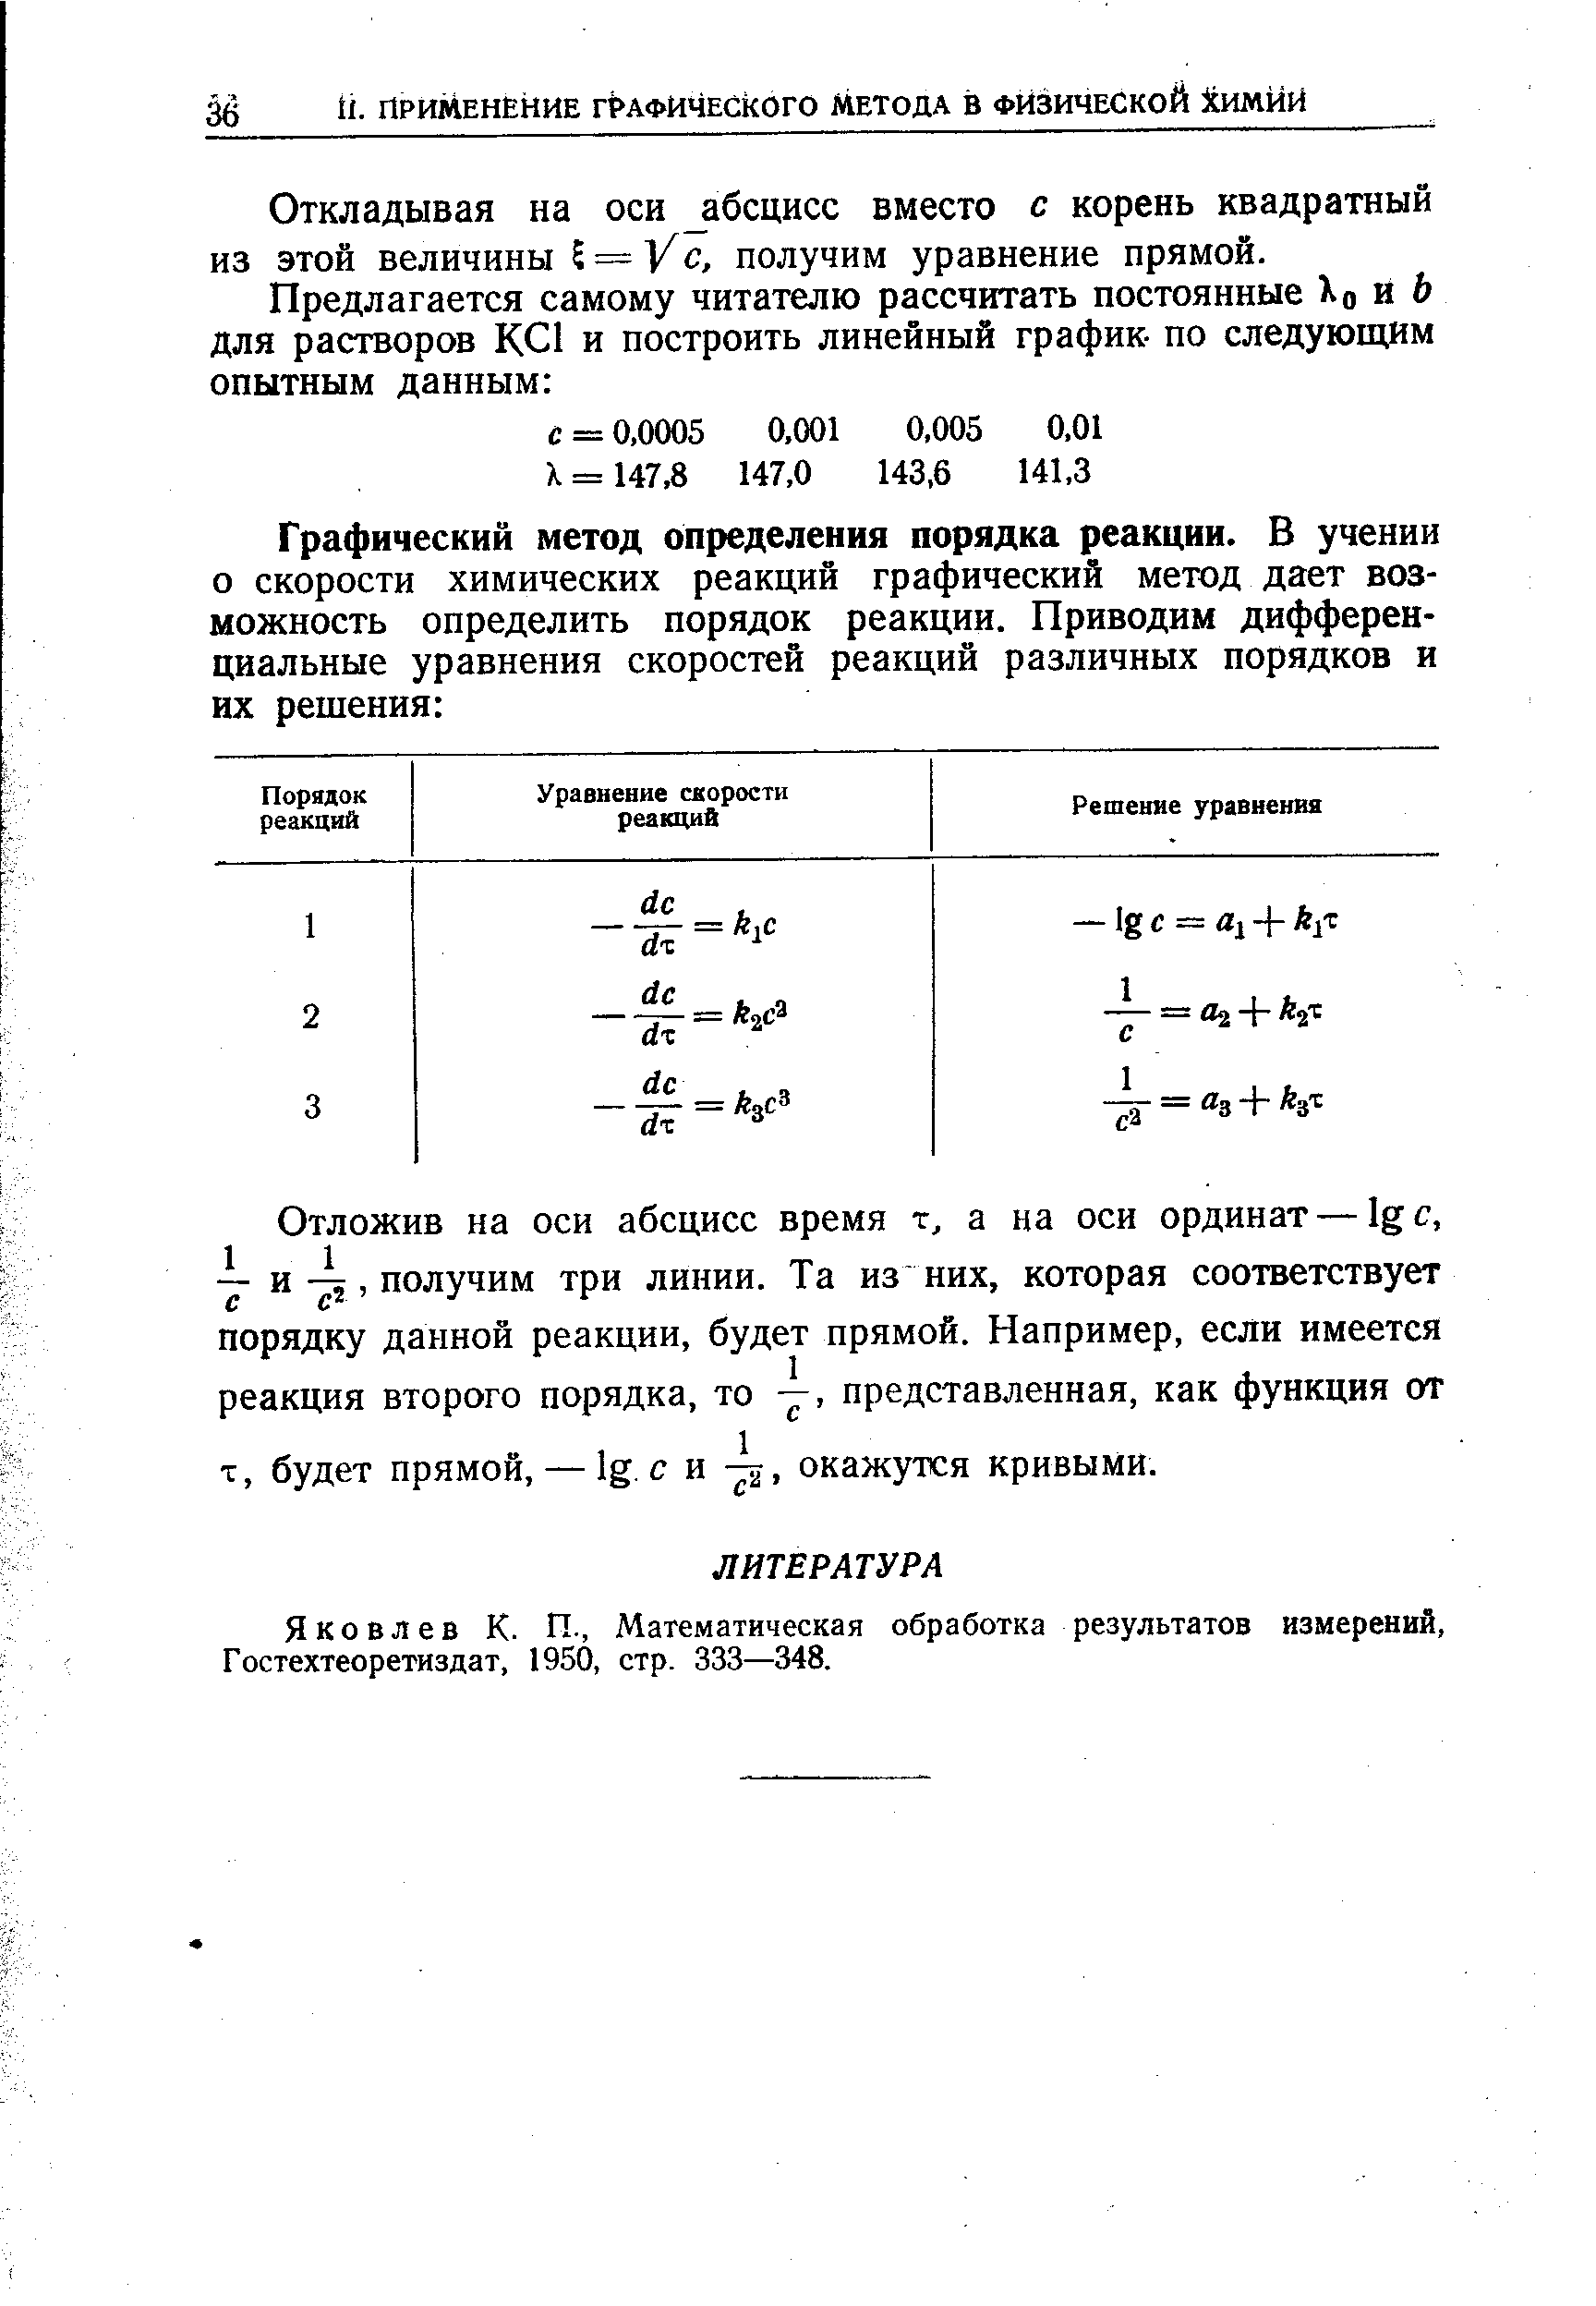 Яковлев К. П., Математическая обработка результатов измерений, Гостехтеоретиздат, 1950, стр. 333—348.